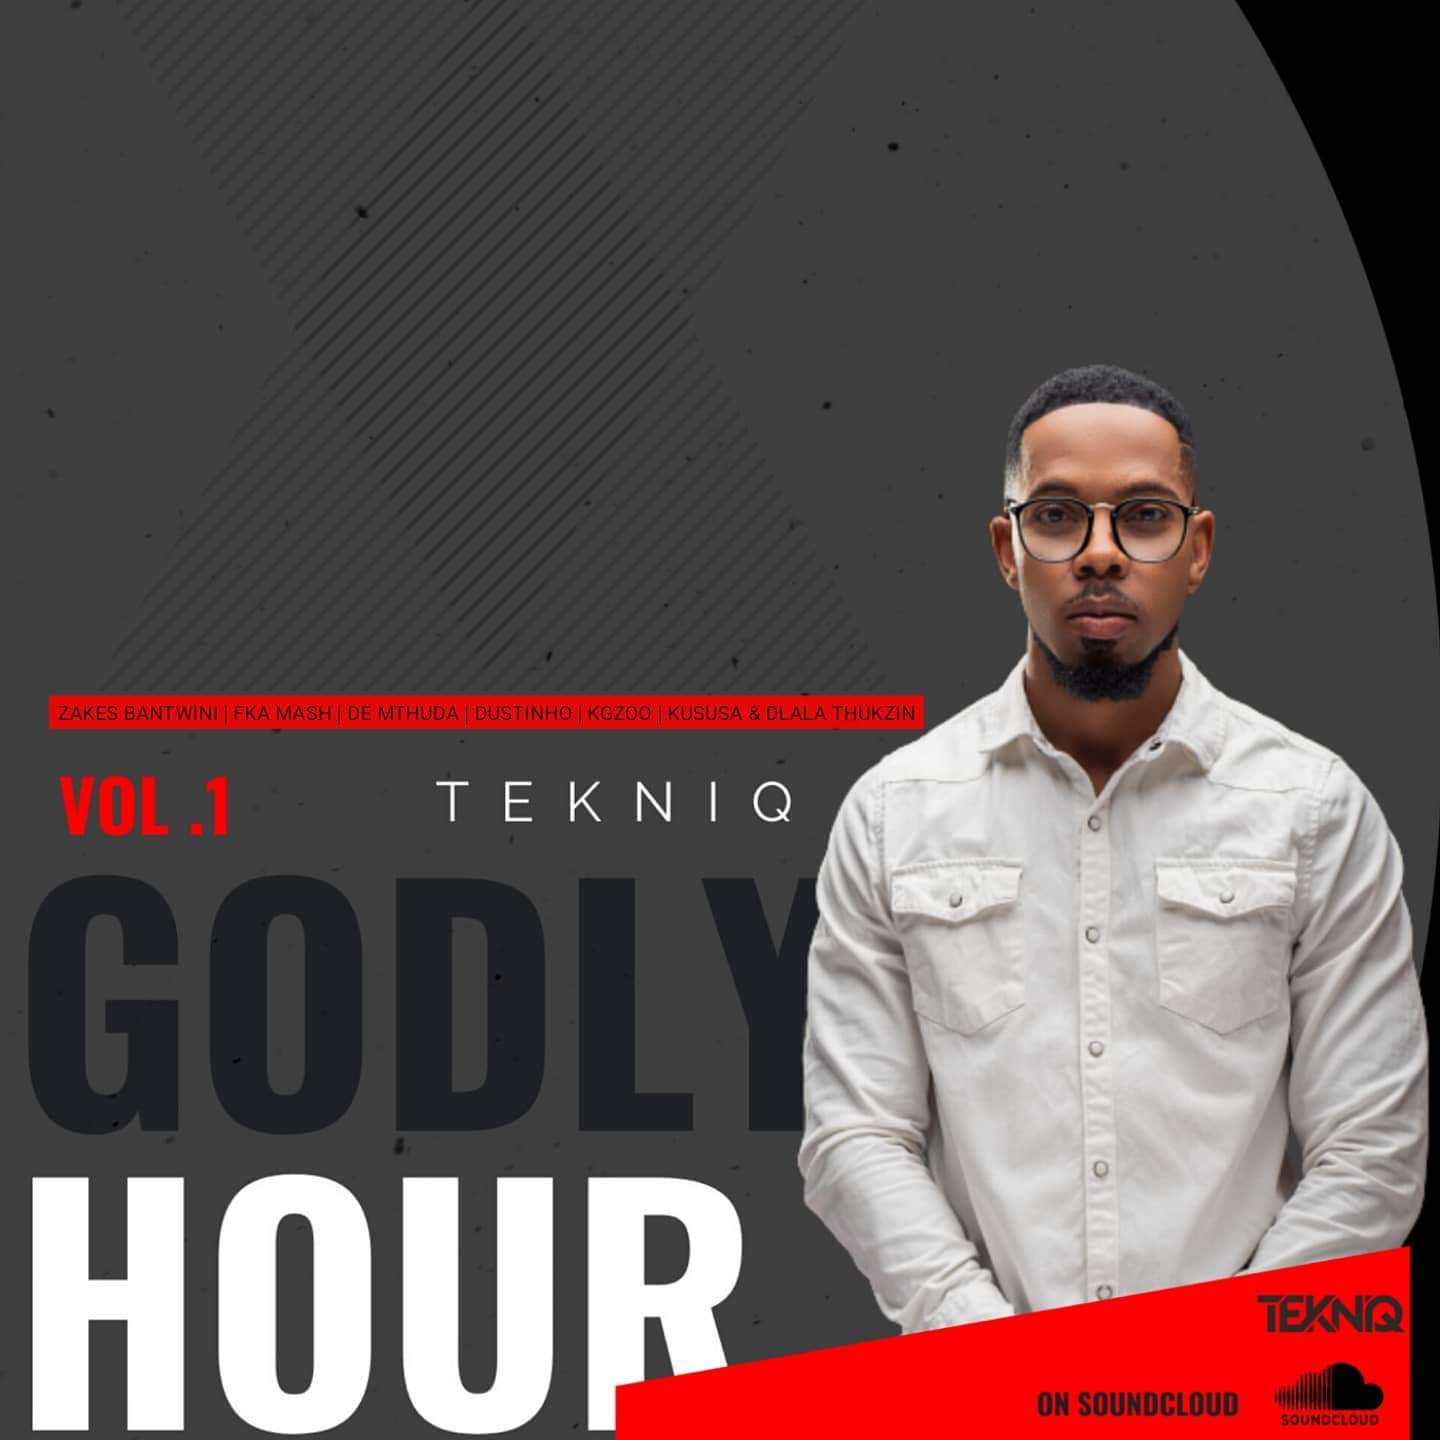 TekniQ Godly Hour Vol. 1 Mix